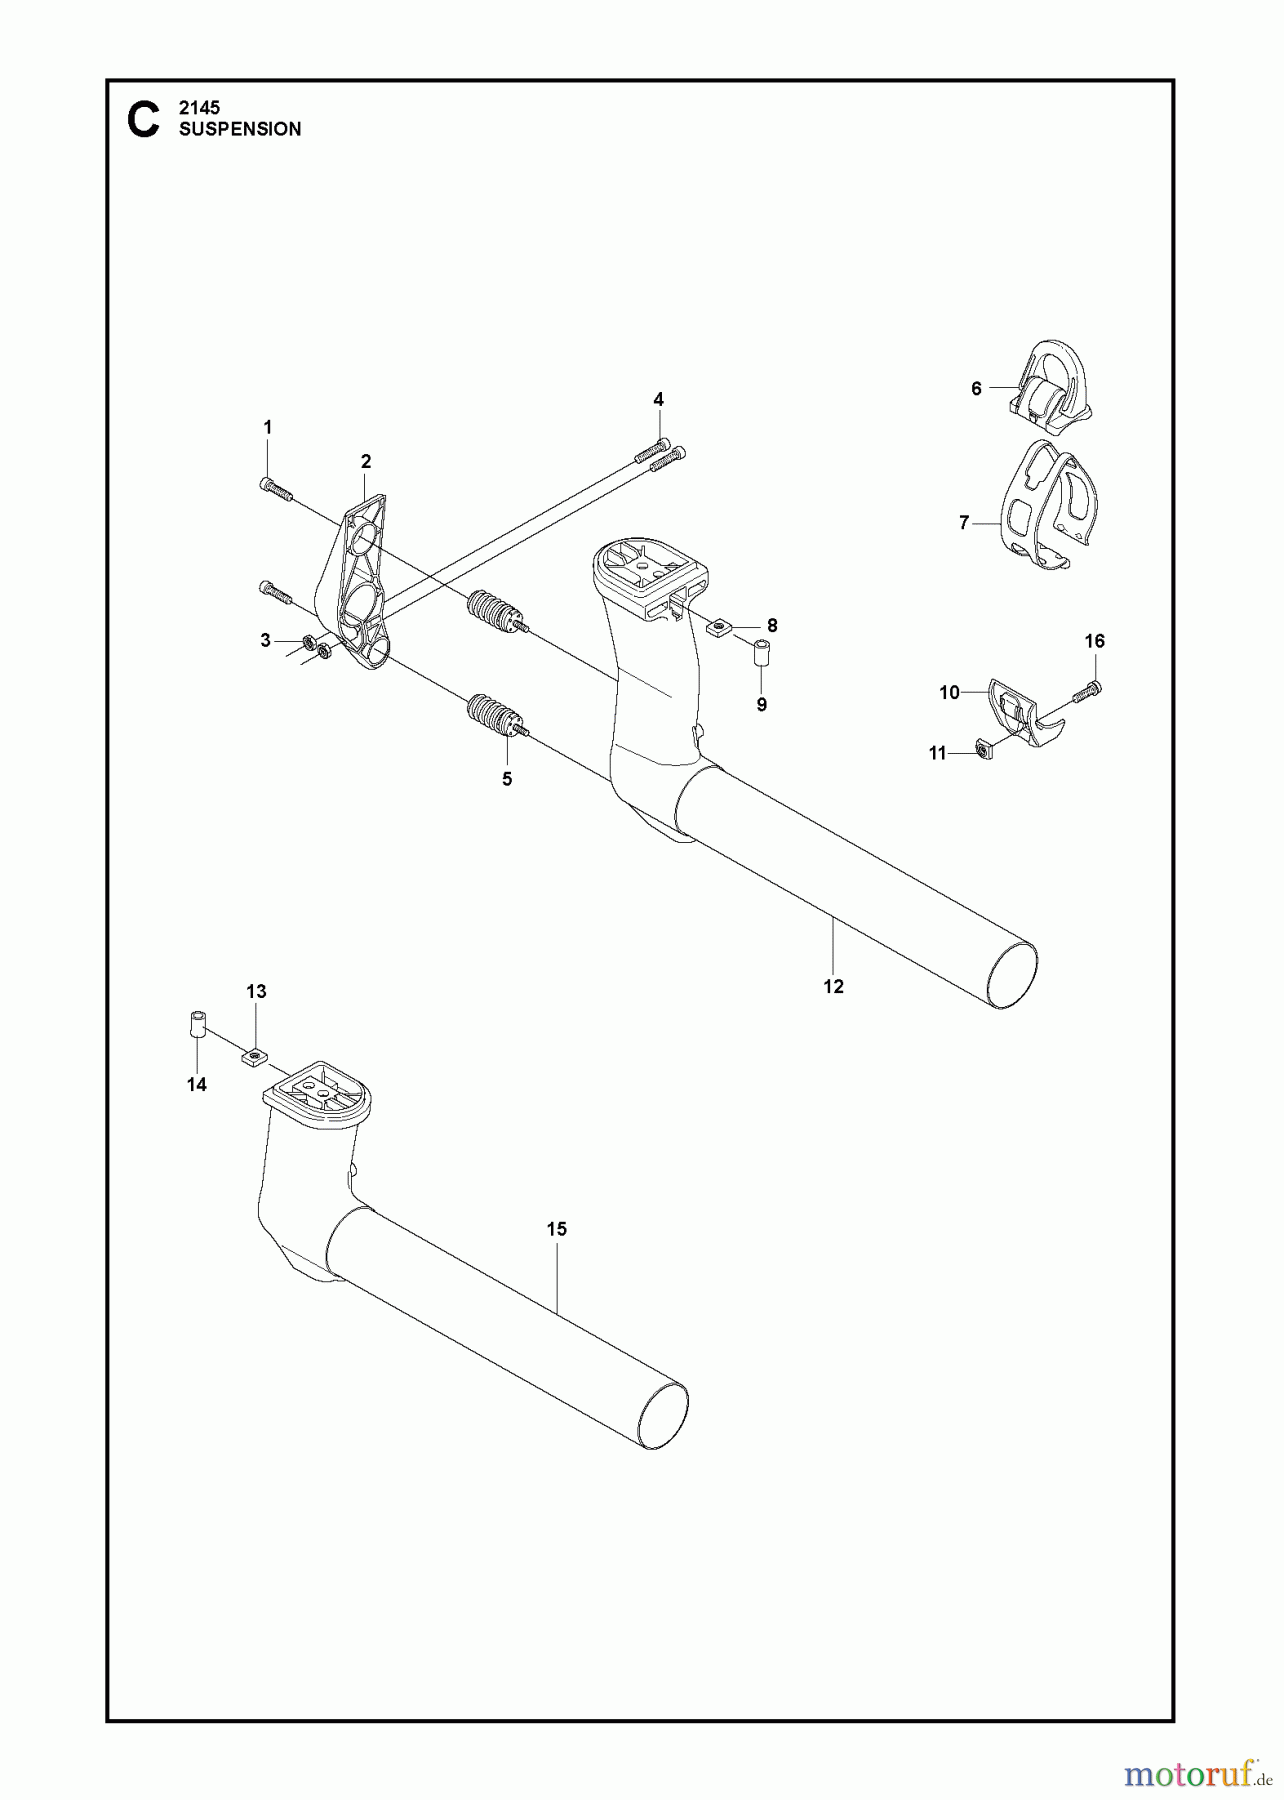  Jonsered Motorsensen, Trimmer BC2145 - Jonsered Brushcutter (2011-02) SUSPENSION